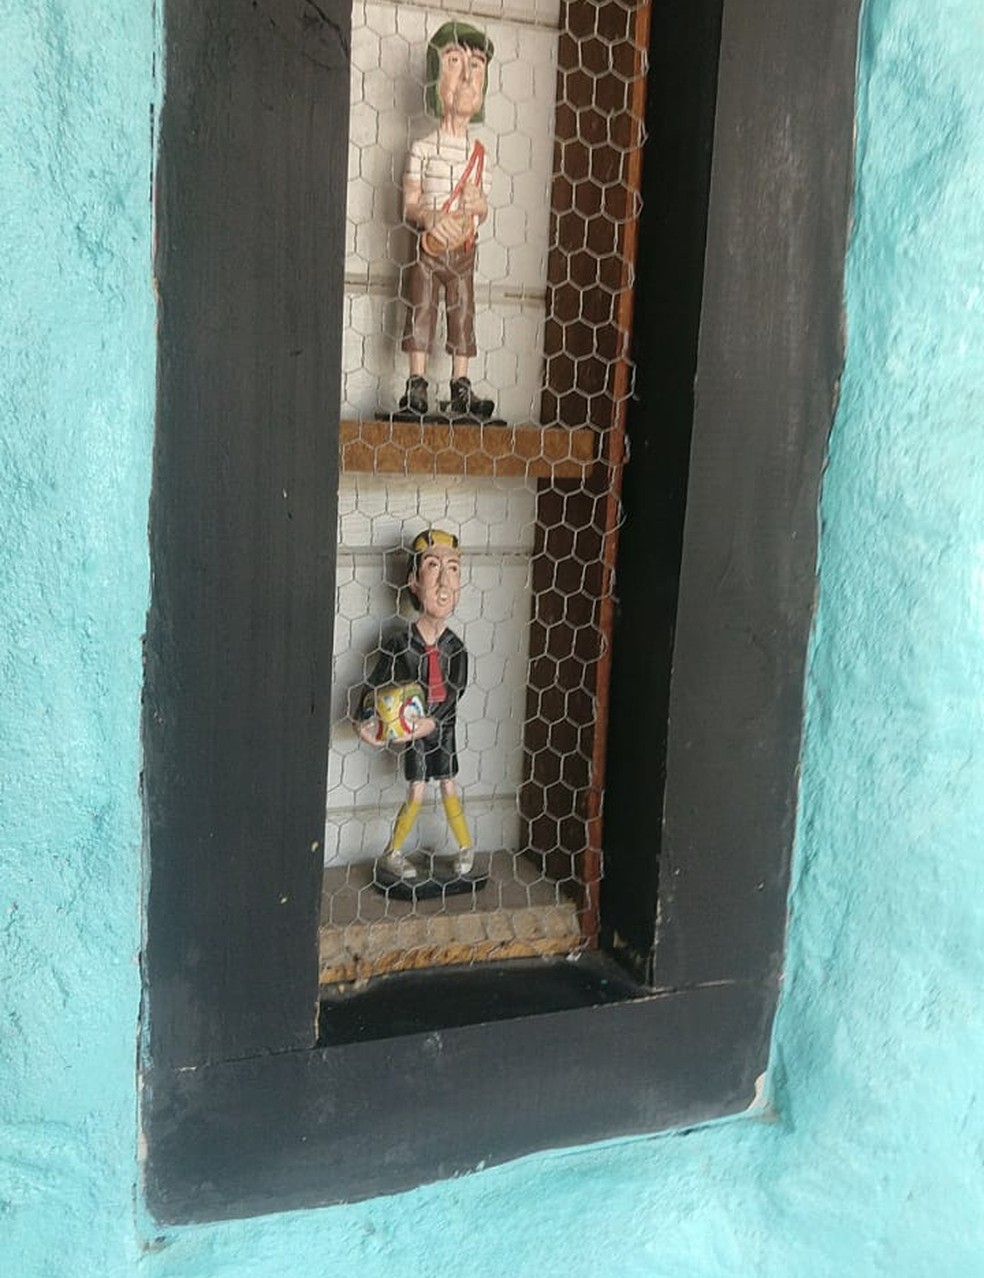 Bonecos dos personagens Chaves e Quico, que inspiraram decoração — Foto: Recanto La Ballena/Divulgação